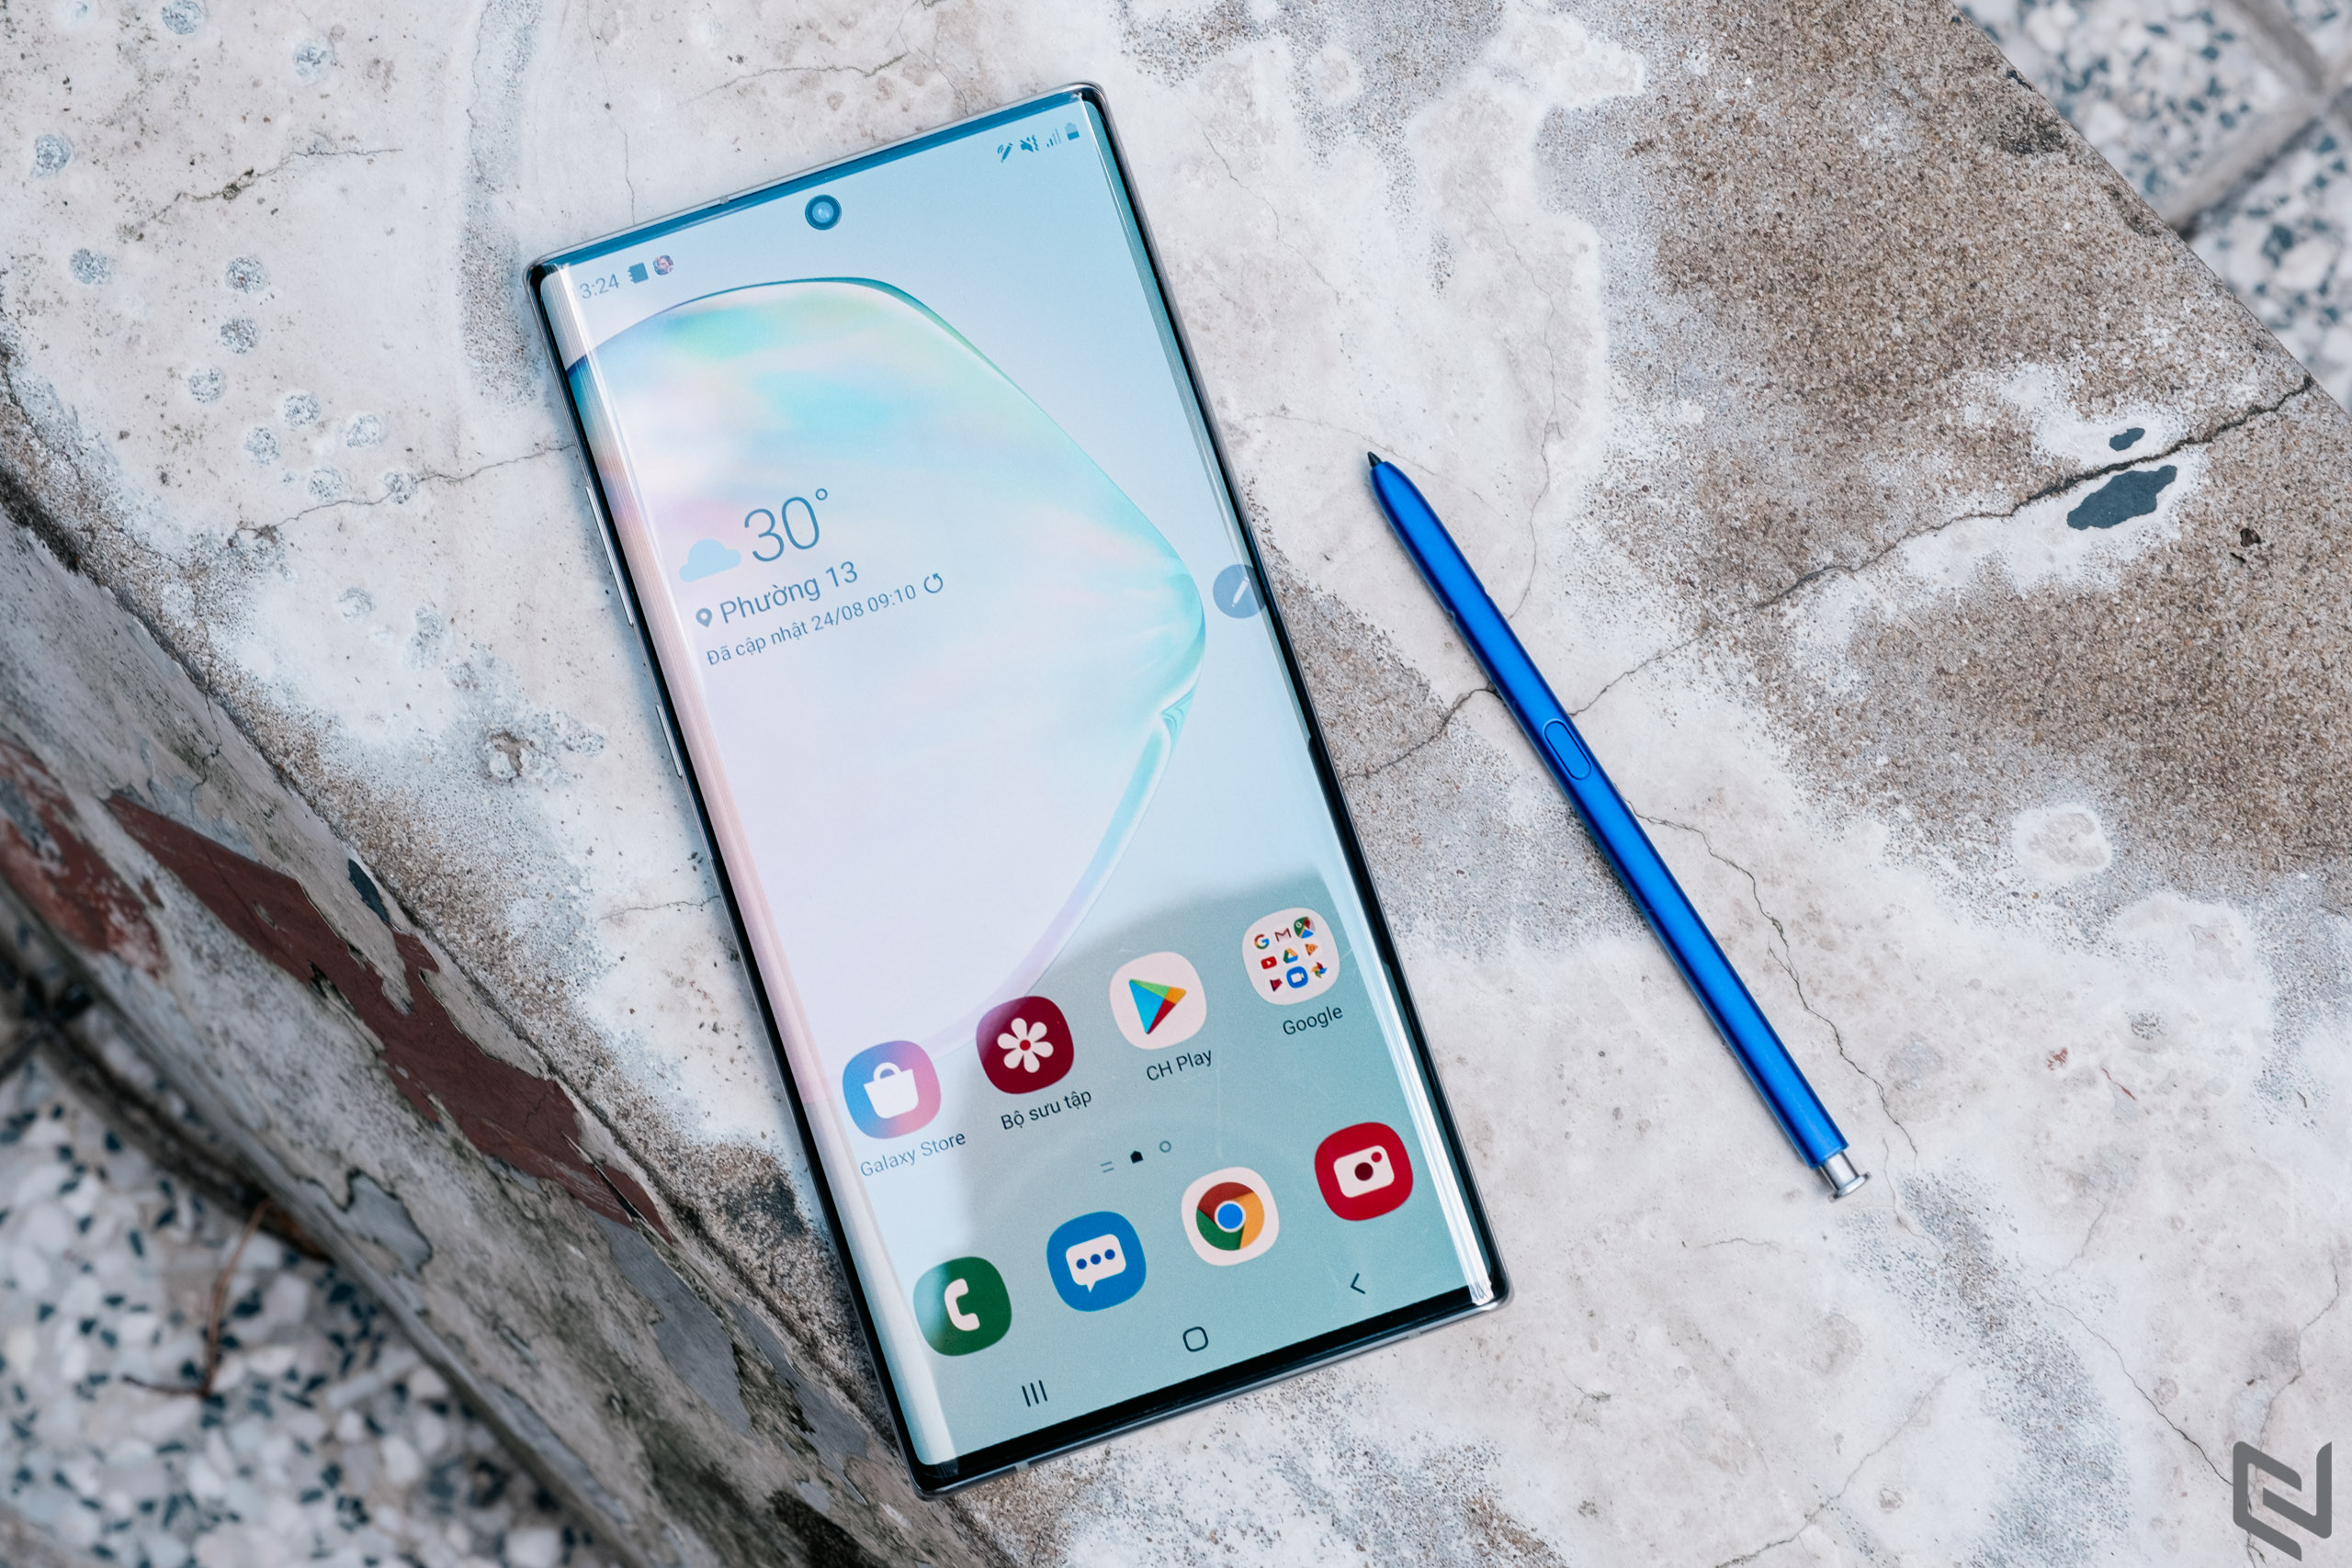 Thiết kế cho smartphone cao cấp của Samsung năm 2020 sẽ hoàn toàn là màn hình đục lỗ